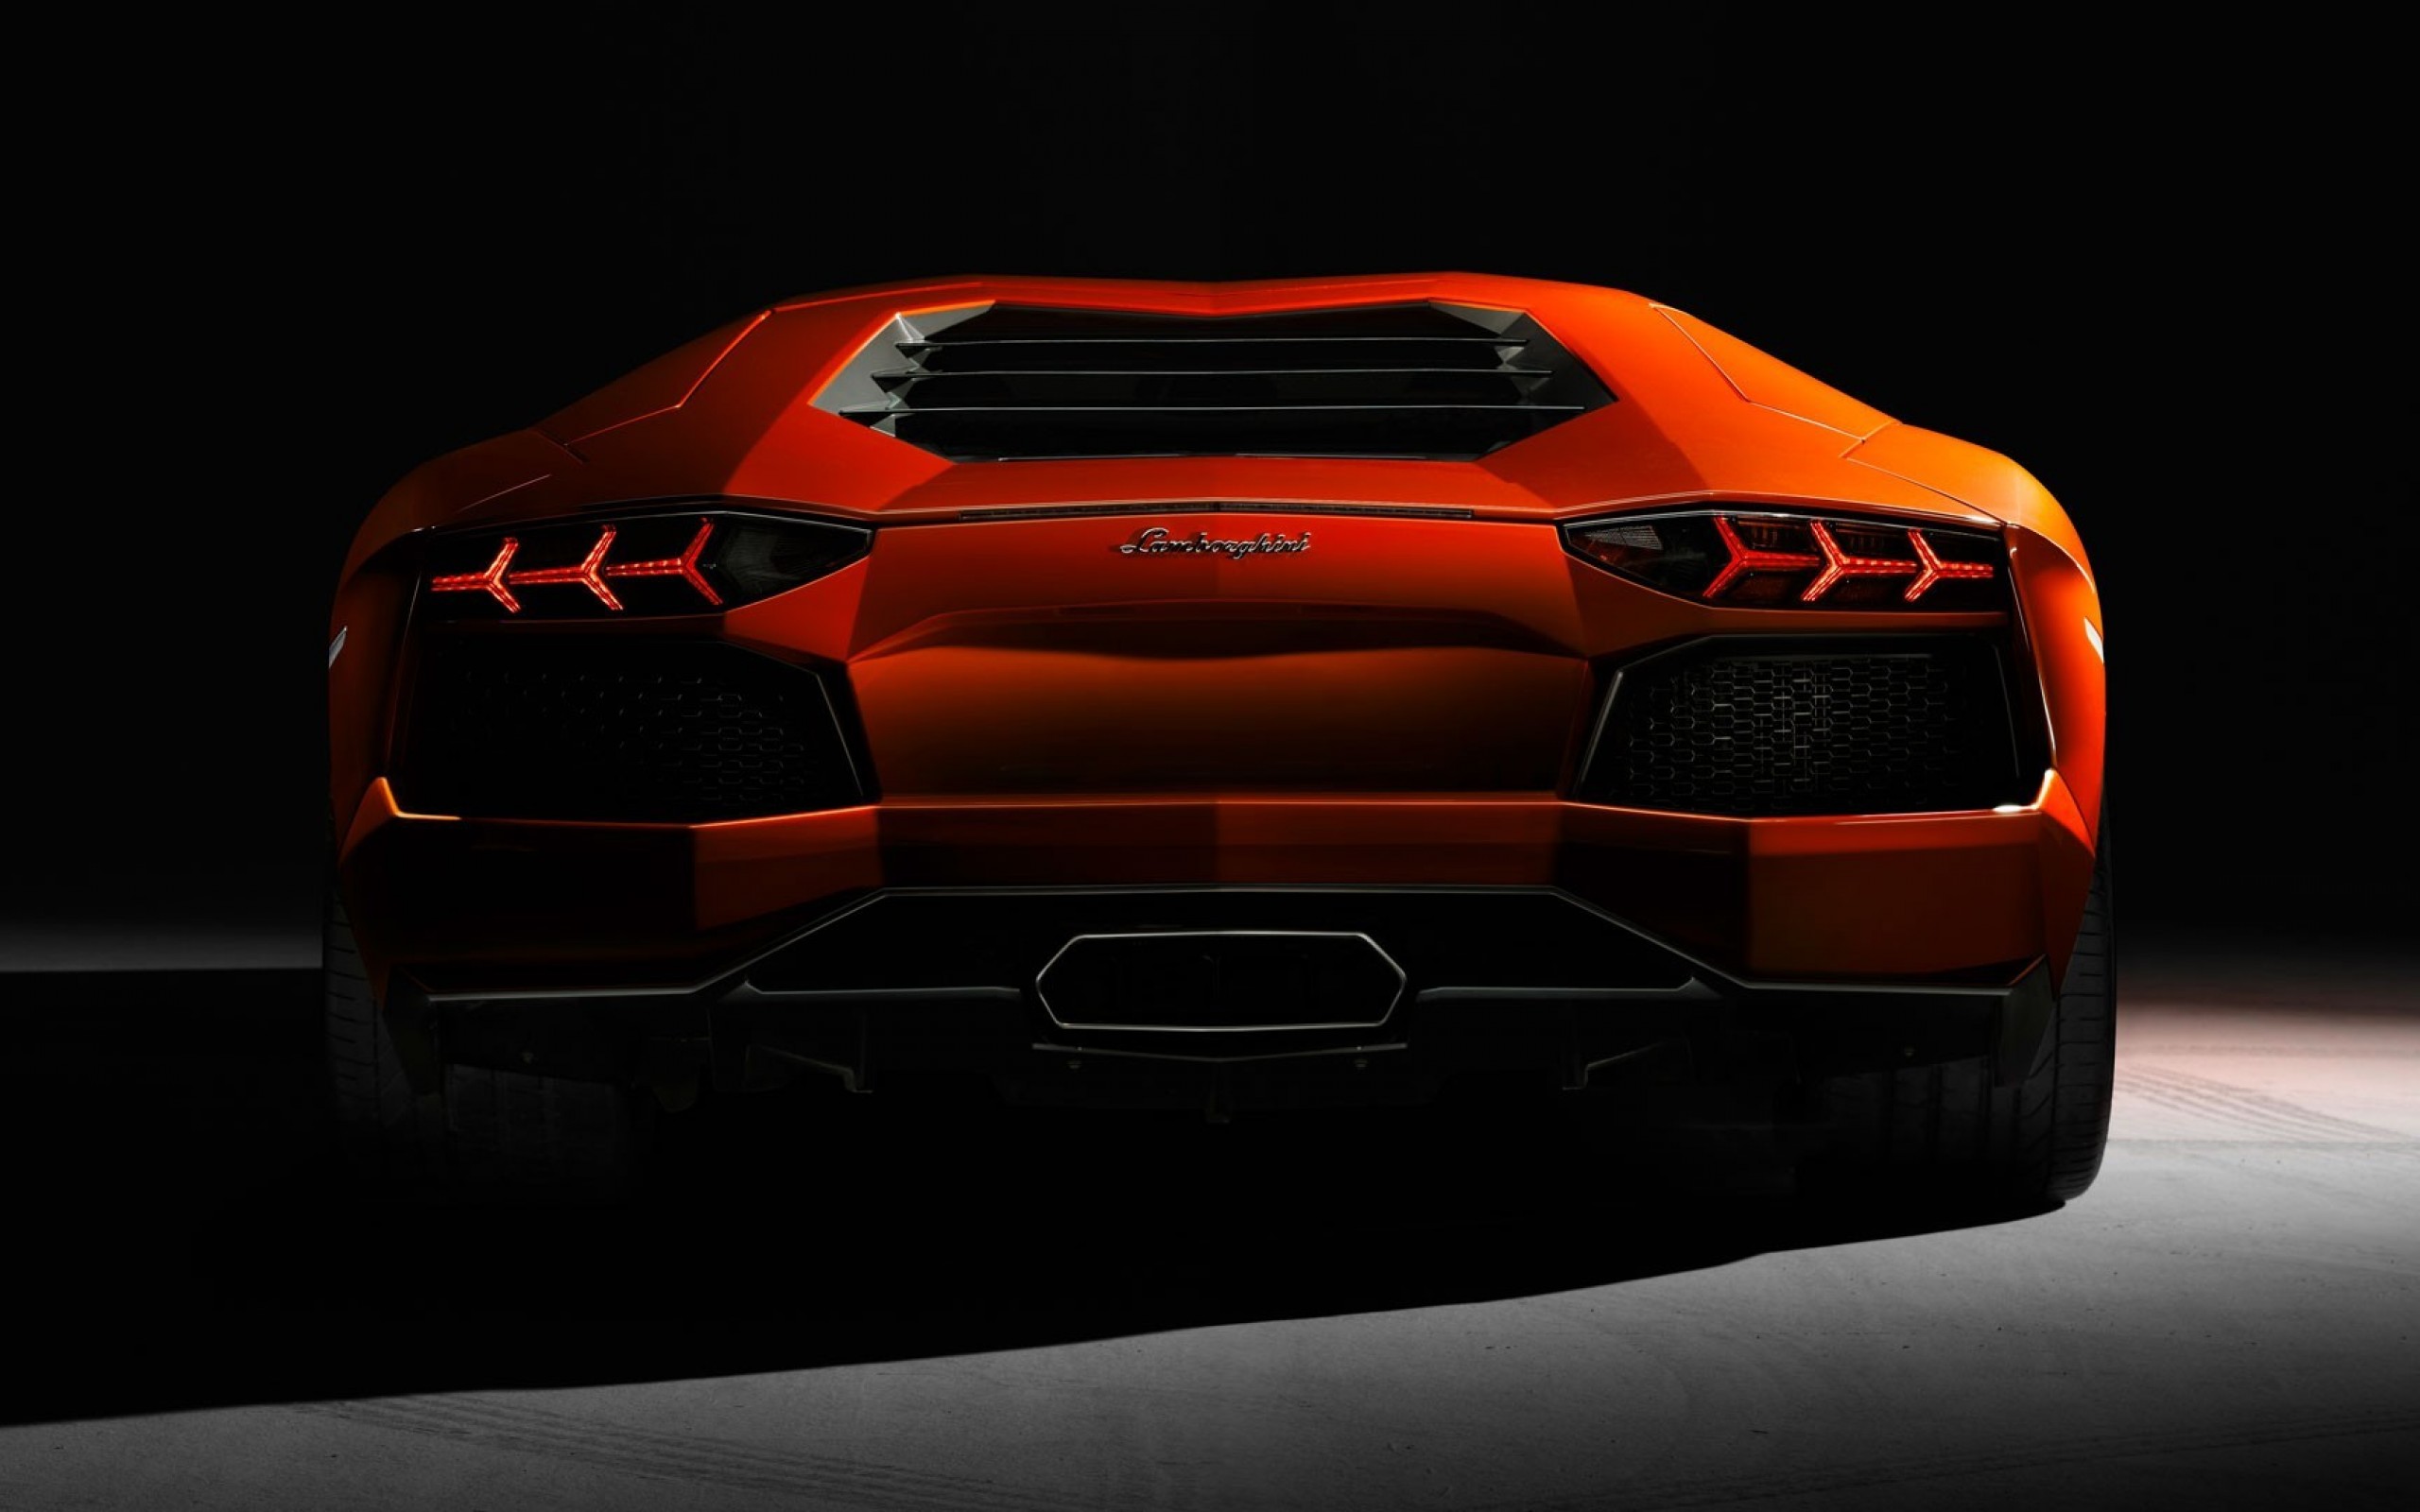 Lamborghini Aventador Fondo De Pantalla Hd Fondo De Escritorio